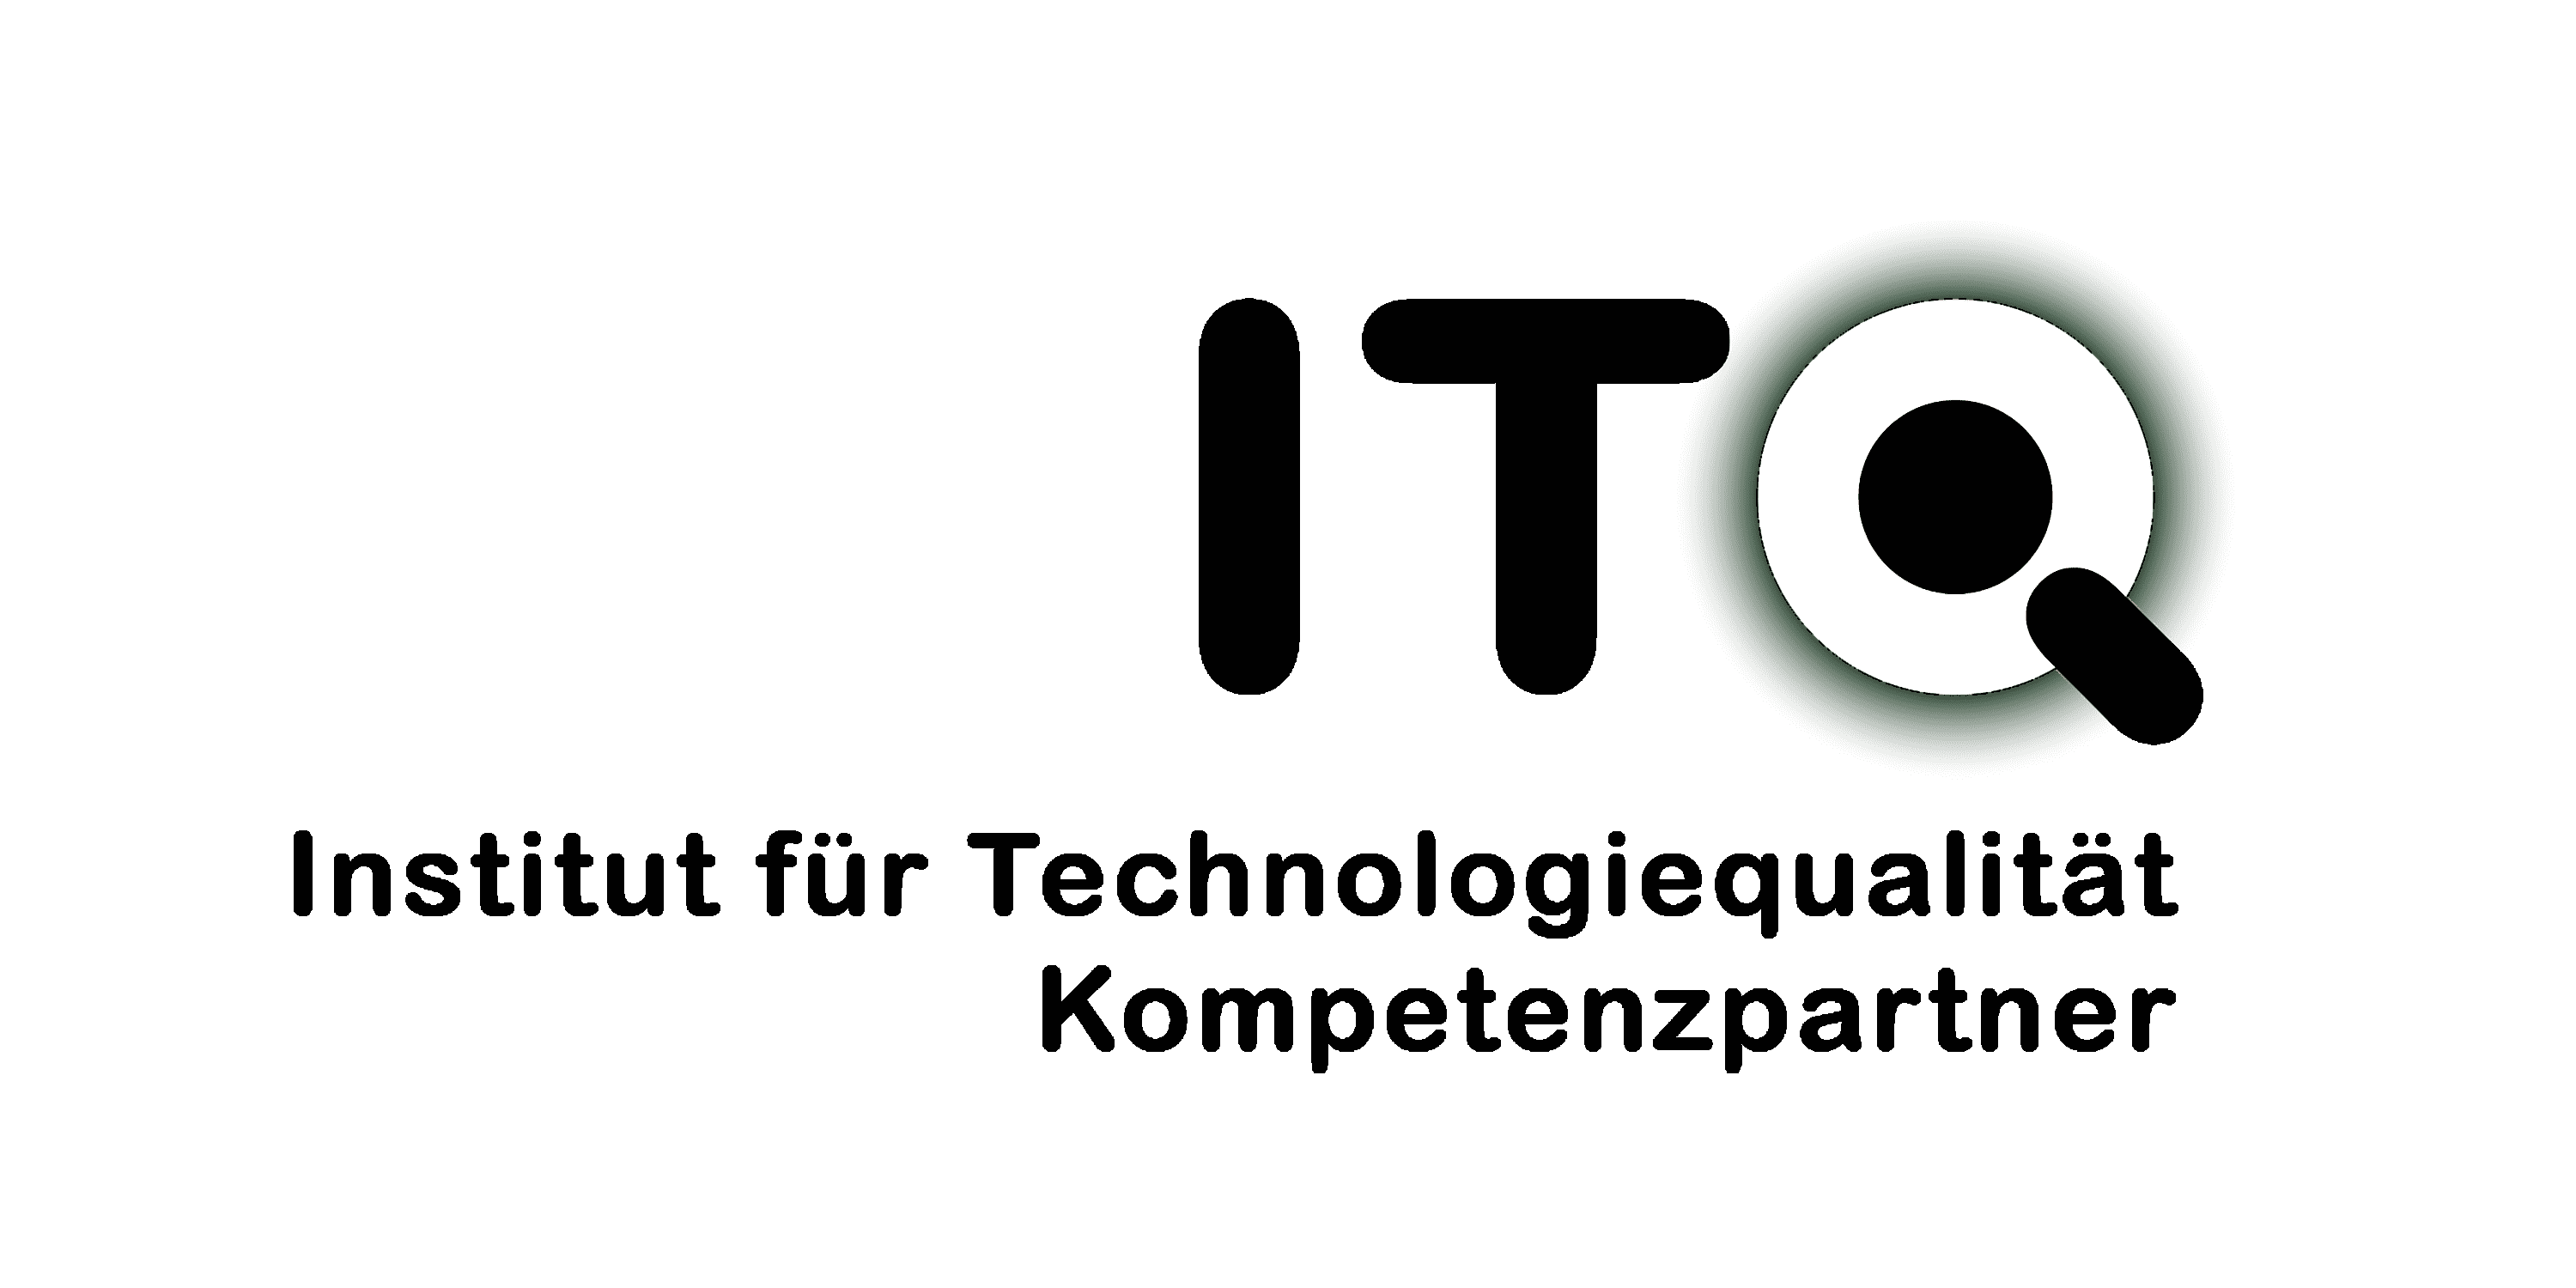 ITQ-Kompetenzpartner Partner